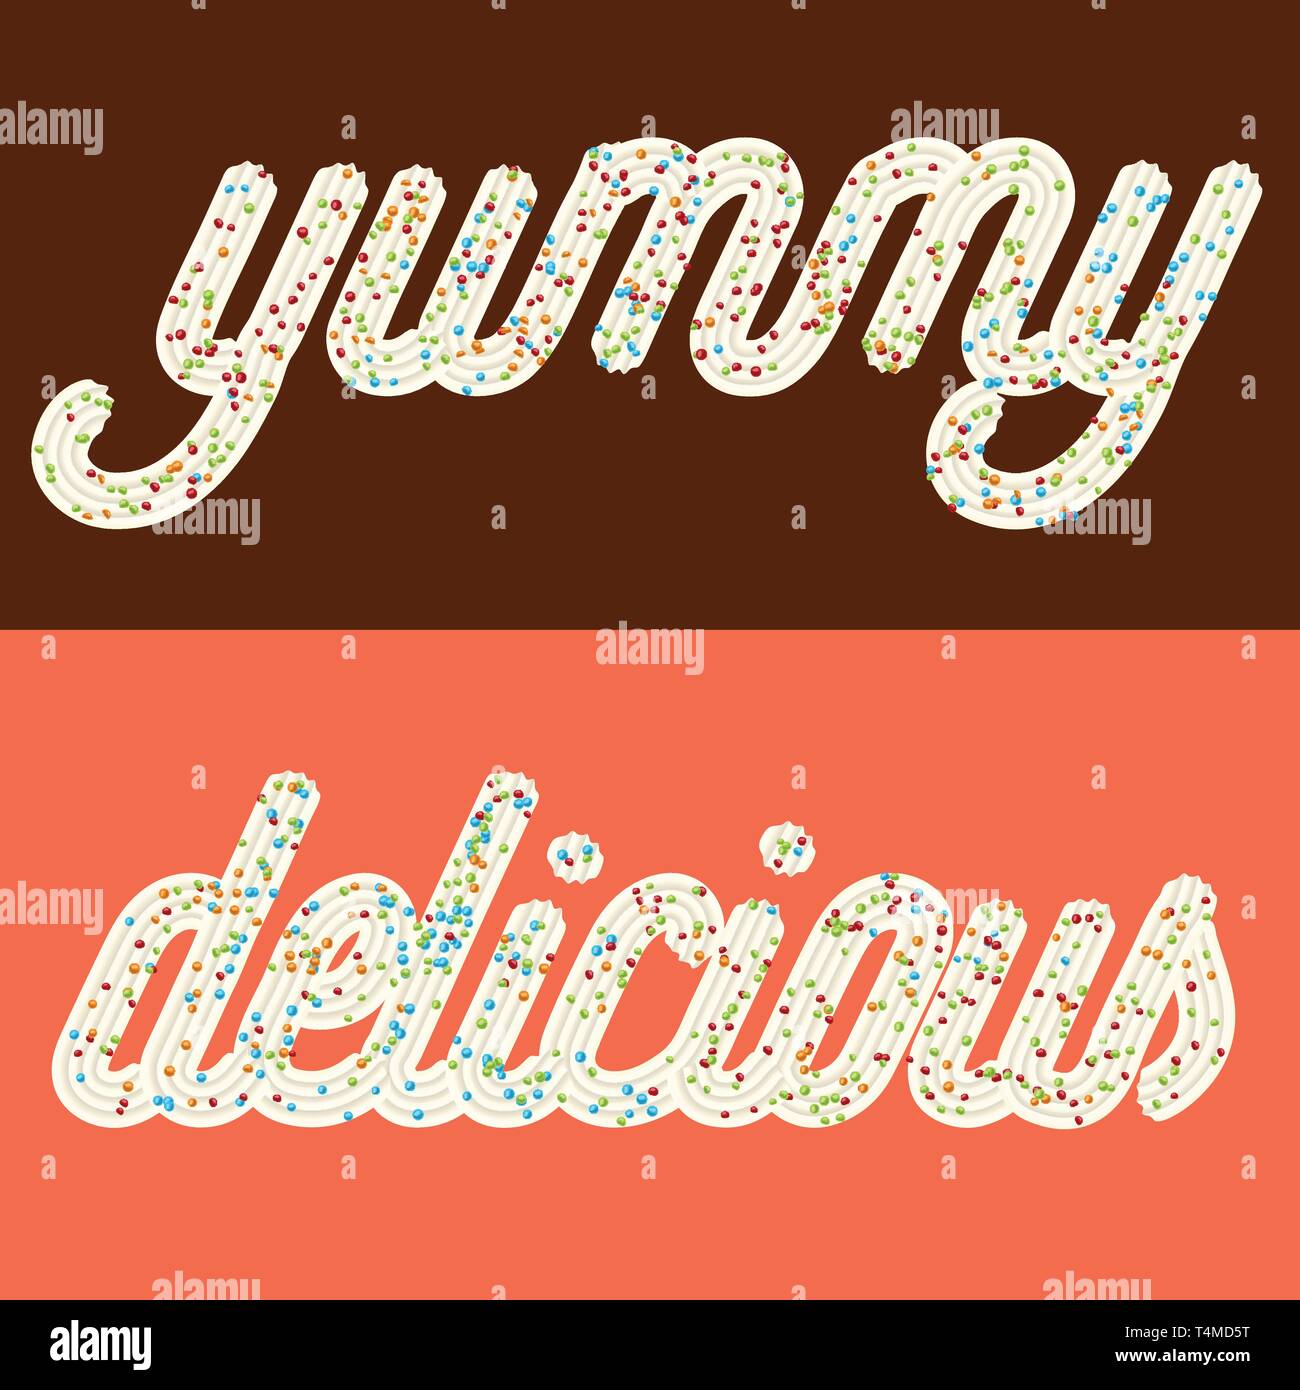 Verlockende Typografie. Vereisung Text. Worte 'delicious' und 'lecker' von Schlagsahne verglast mit Süßigkeit. Vektor Stock Vektor